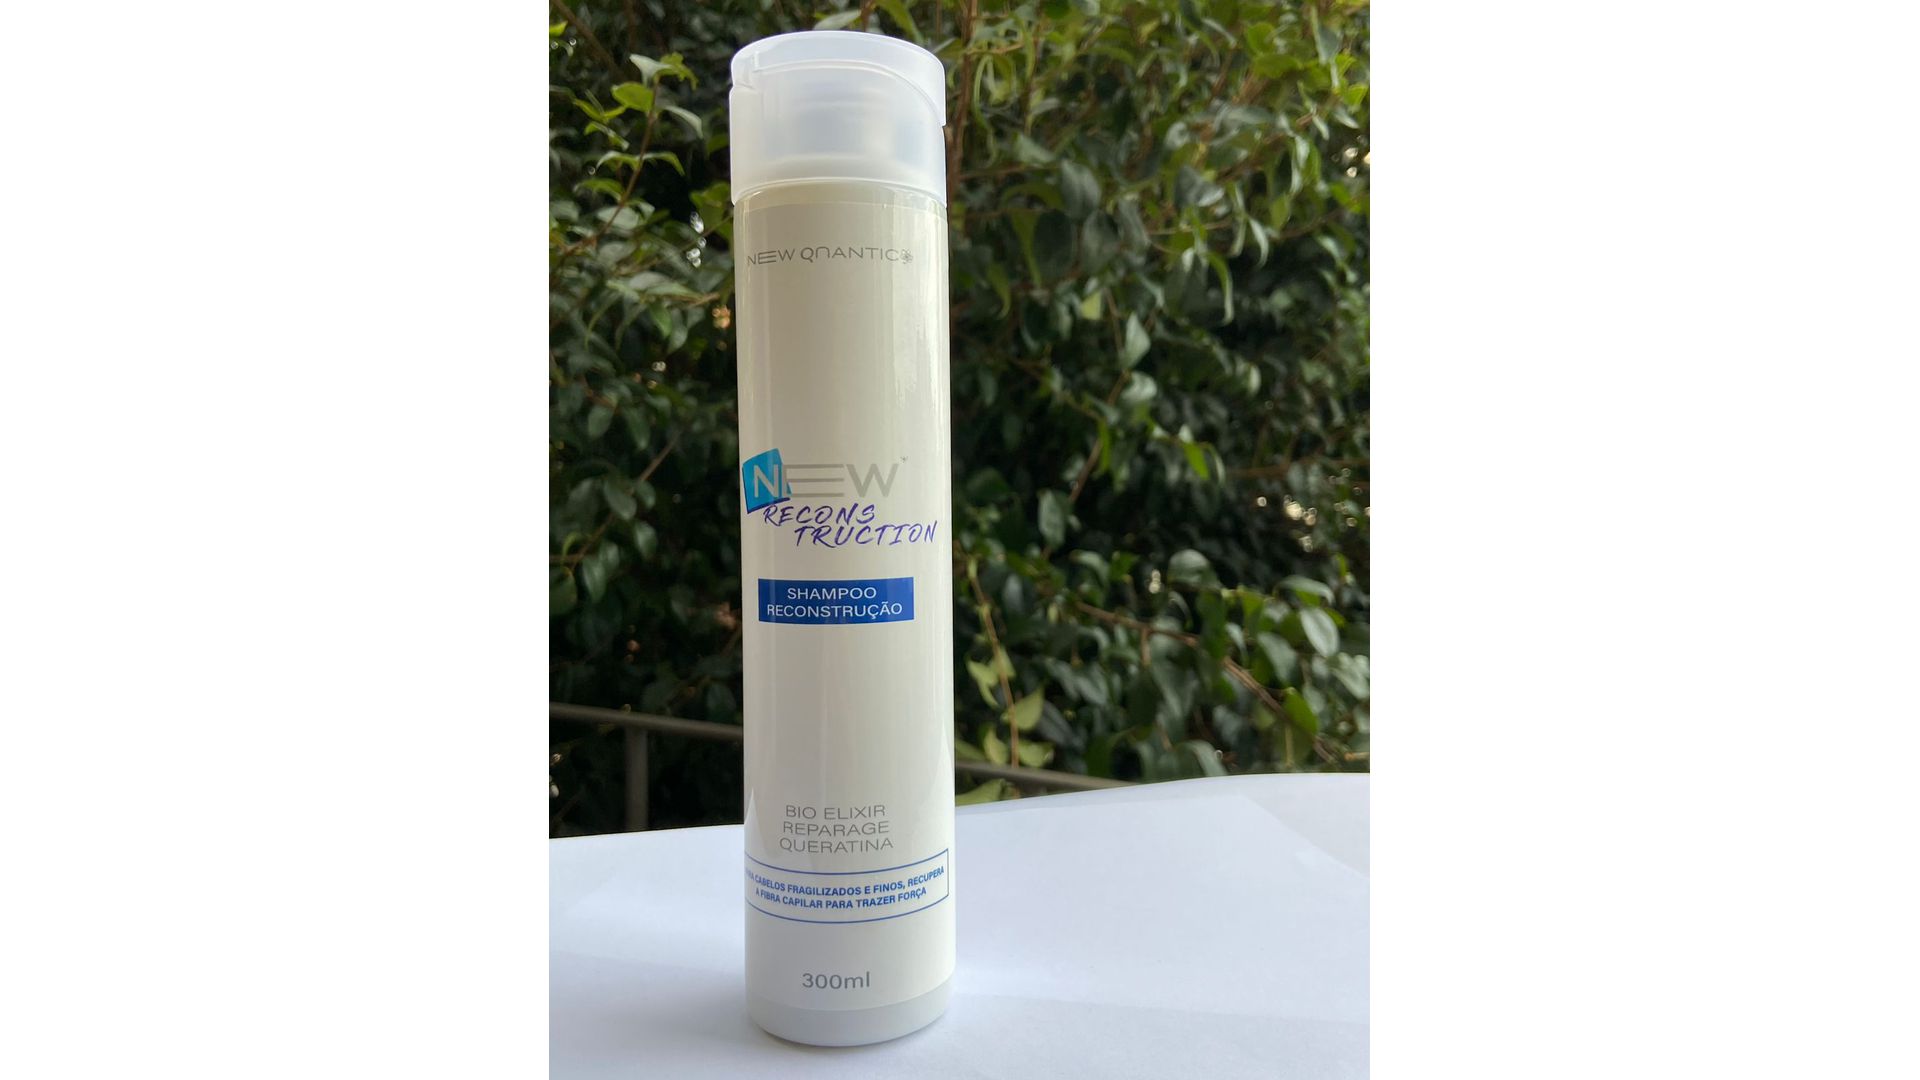 Shampoo Reconstrutor New Quantic - Para cabelos fragilizados e finos, recupera a fibra capilar para trazer força